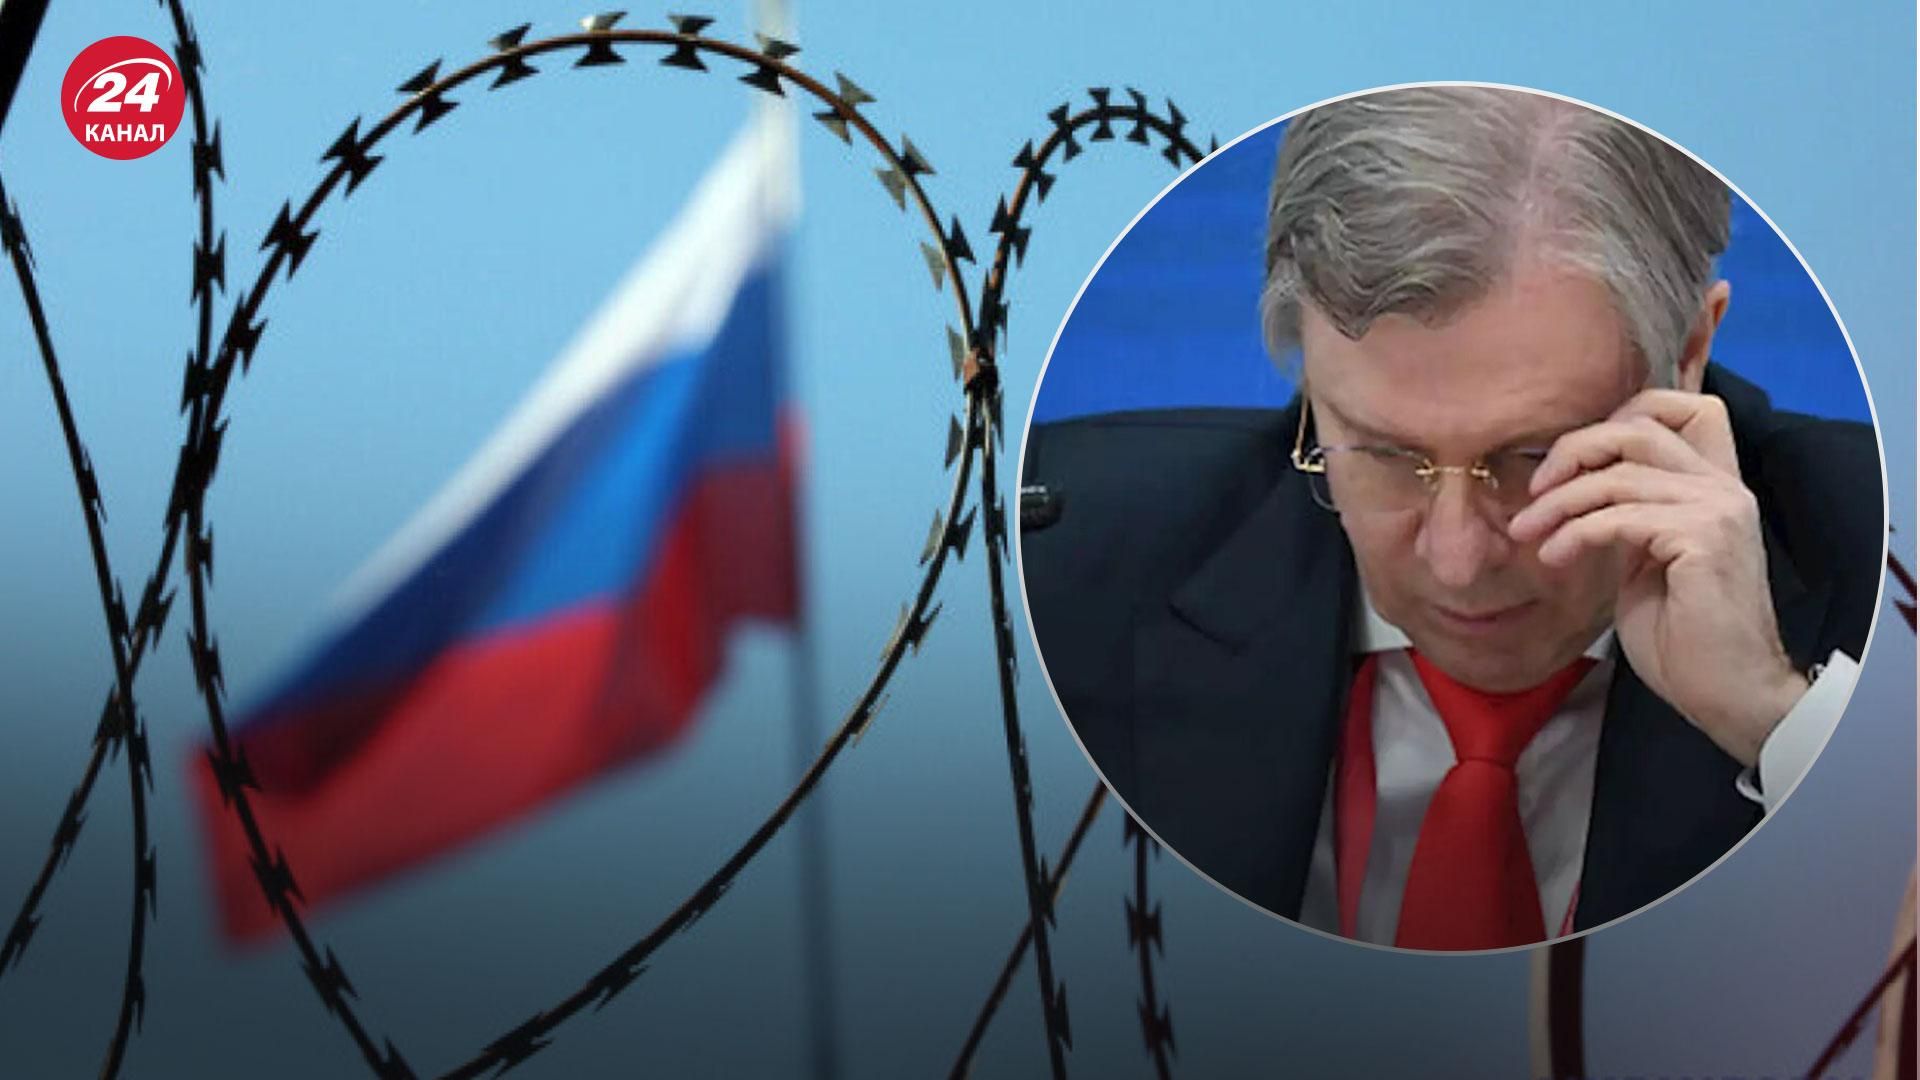 "Поламали нам усю логістику": міністри Росії вже бідкаються на санкції